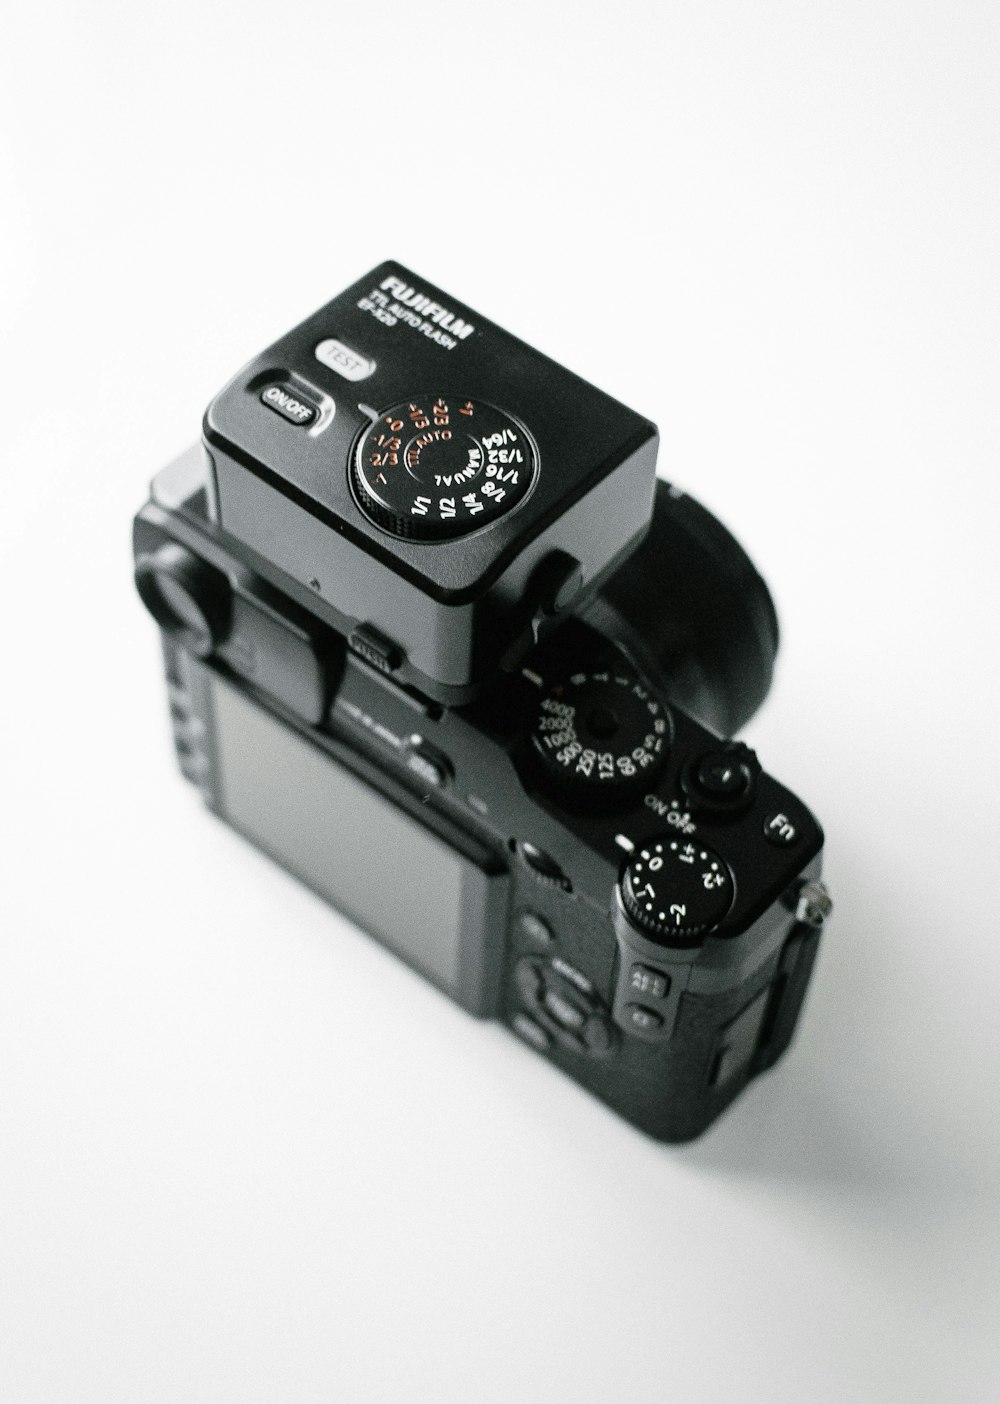 câmera DSLR Fujifilm preta